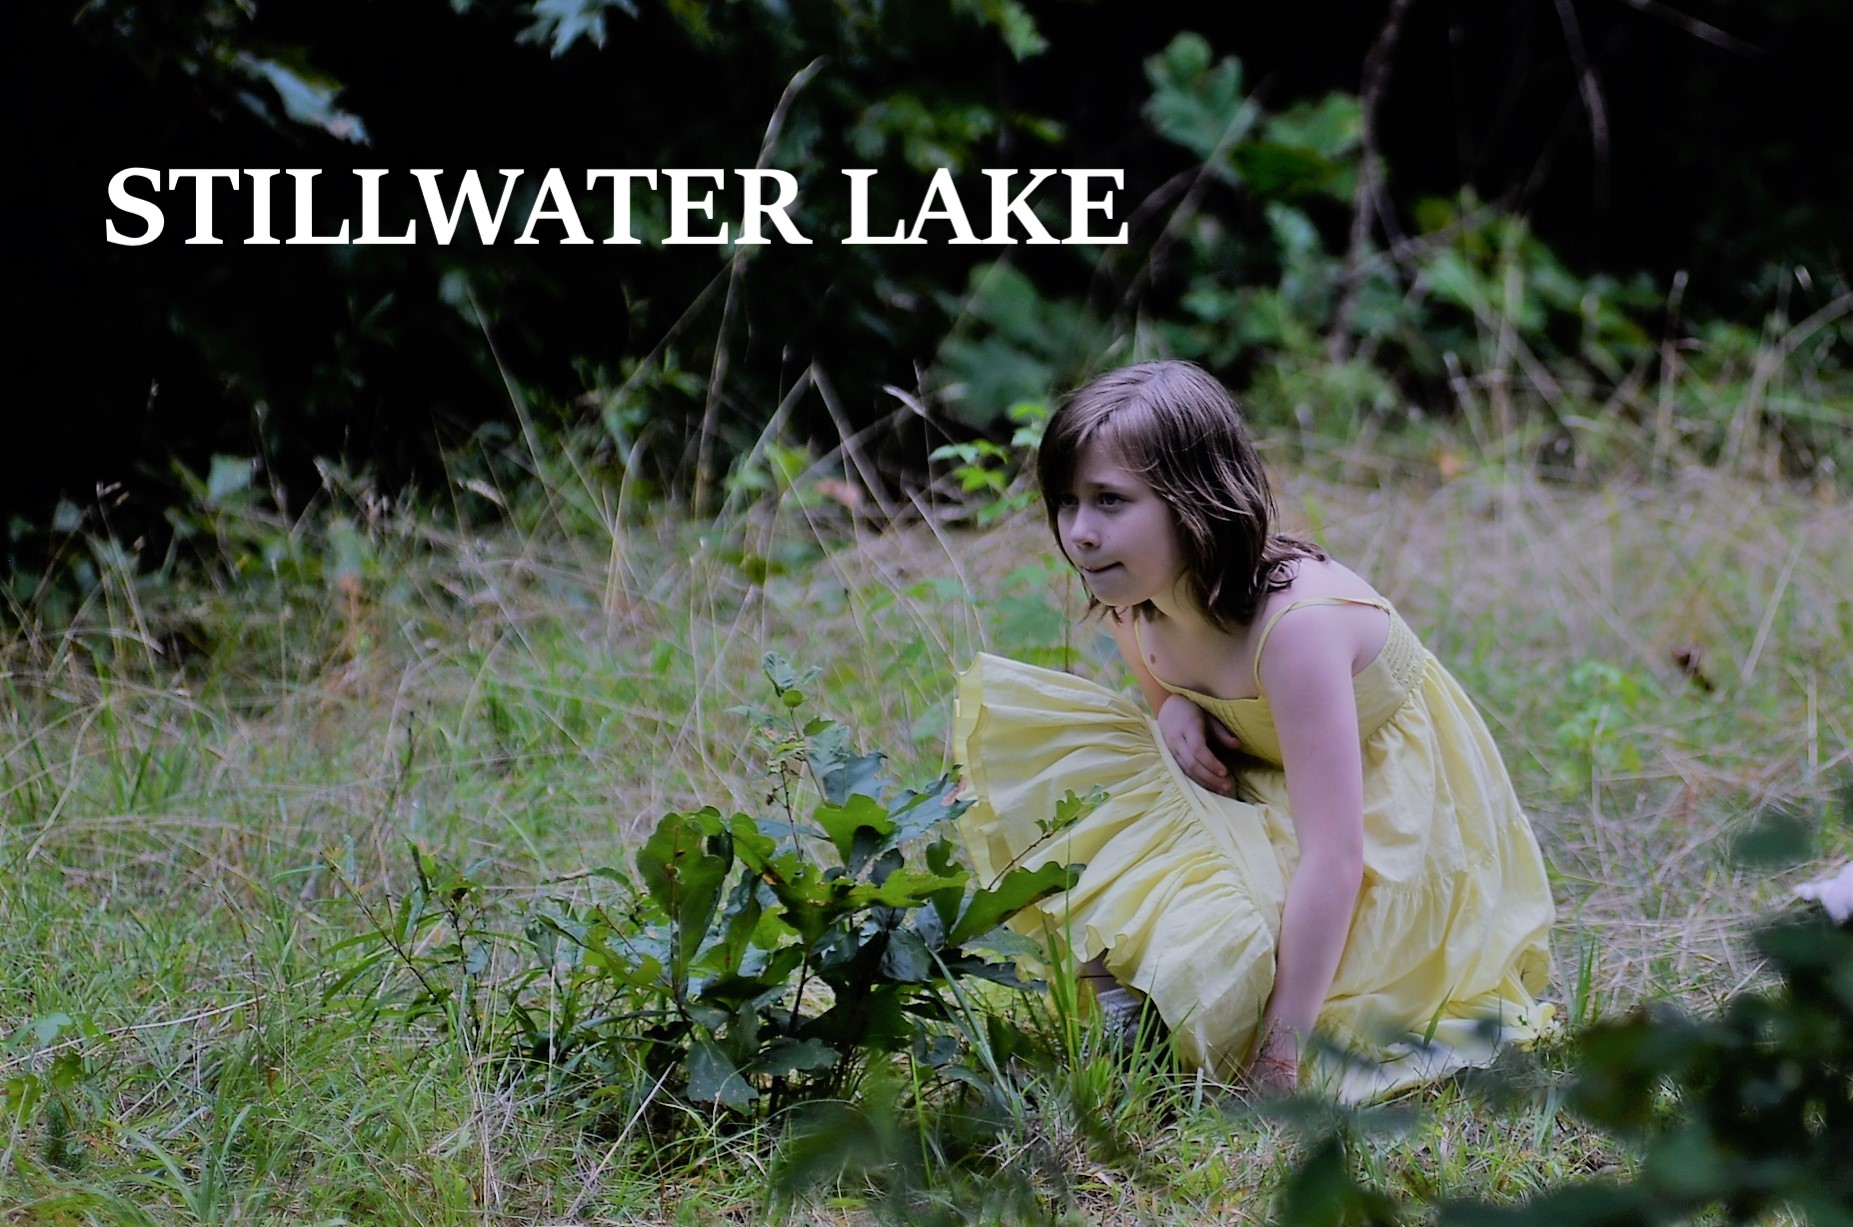 Stillwater lake poster still.JPG